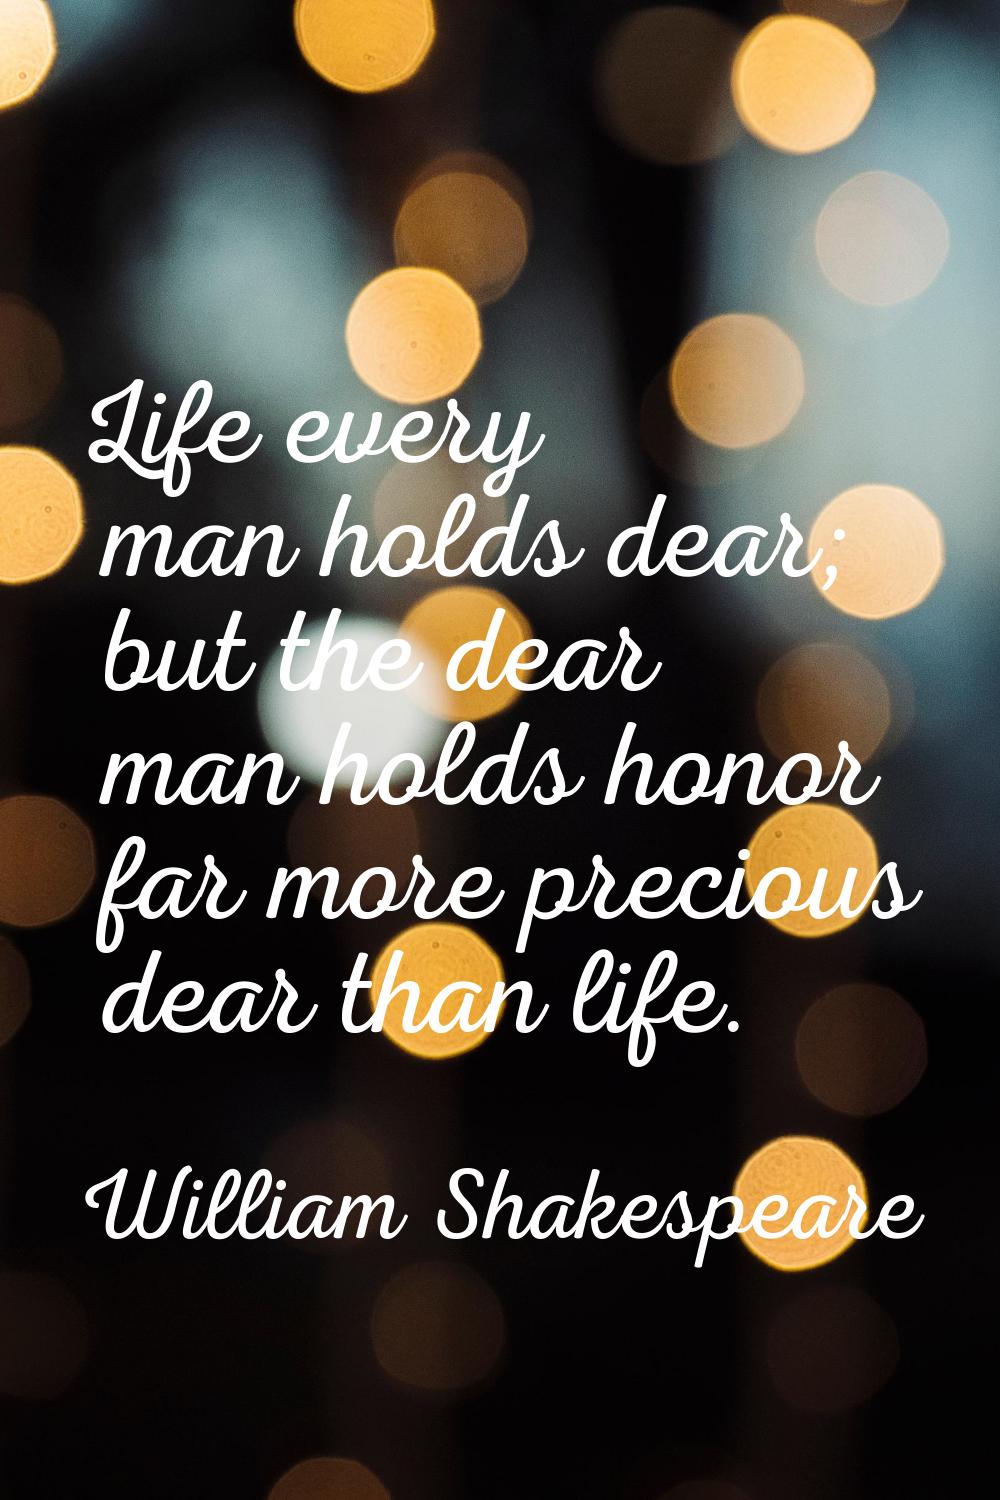 Life every man holds dear; but the dear man holds honor far more precious dear than life.